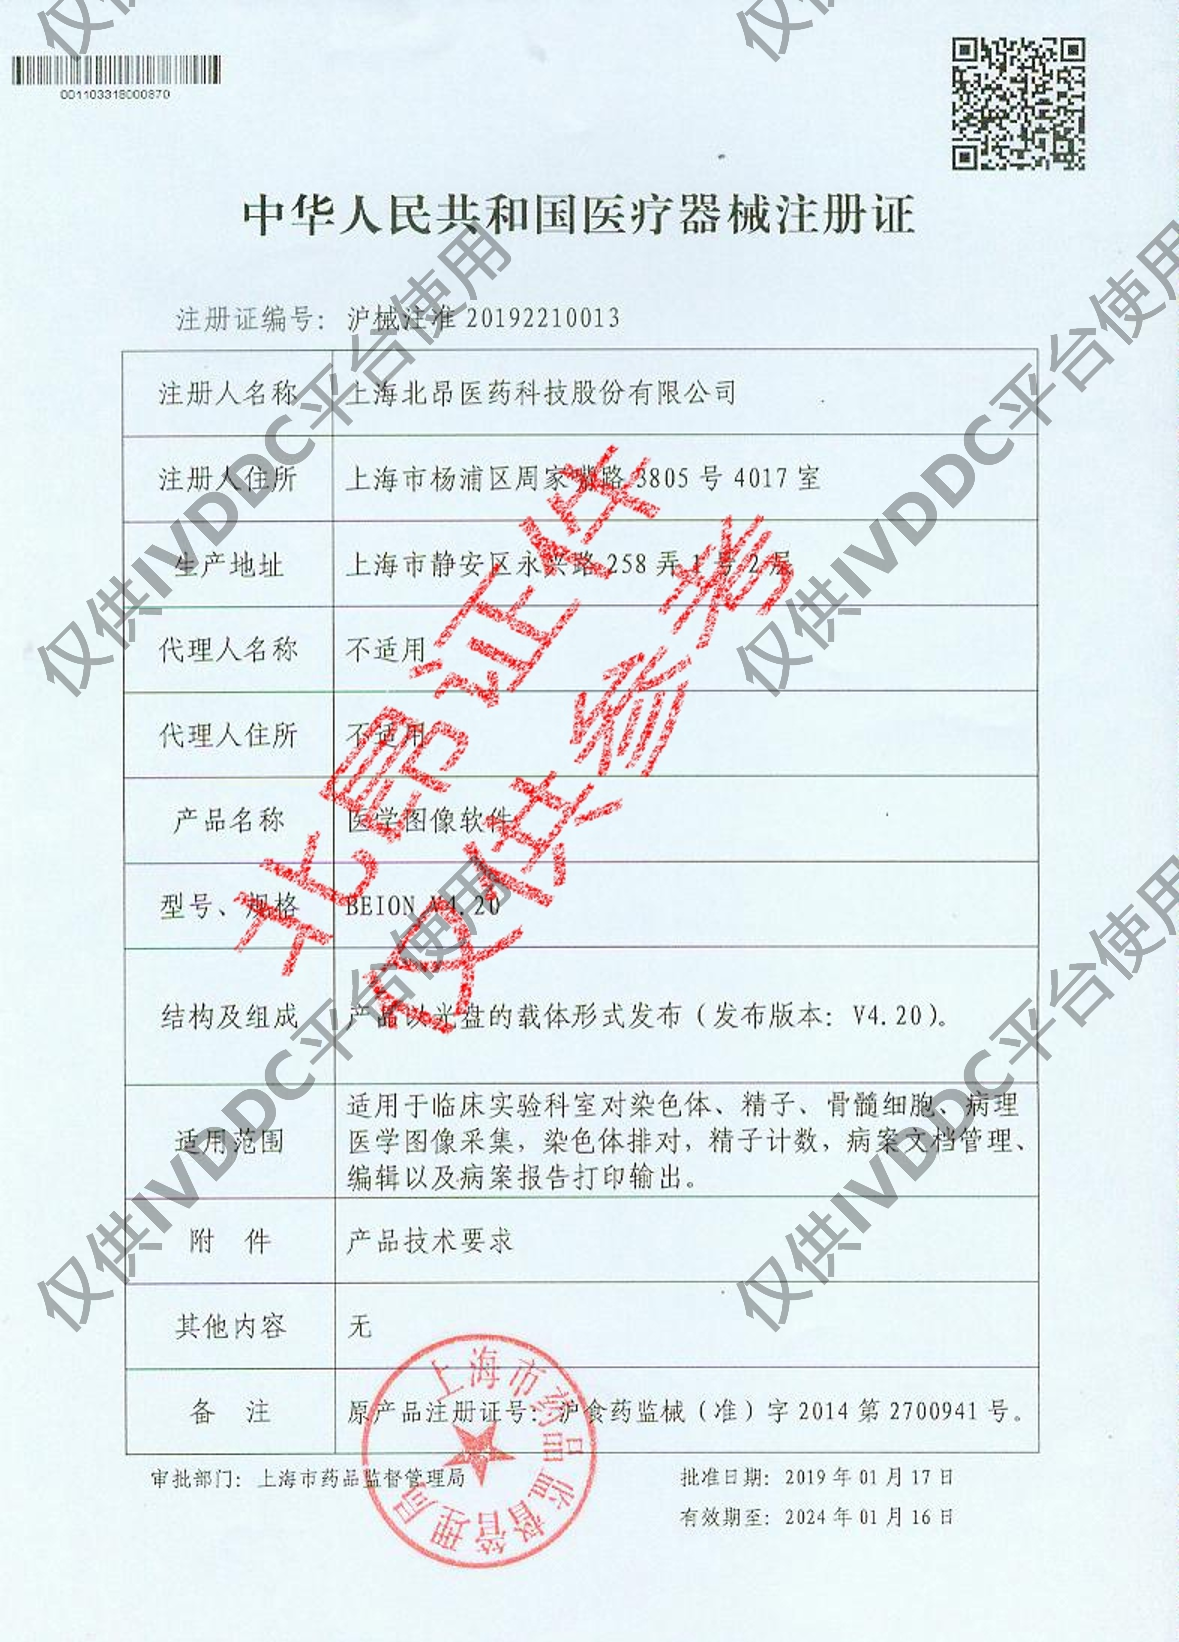 【上海北昂】 医学图像软件 BEION V4.90附件注册证